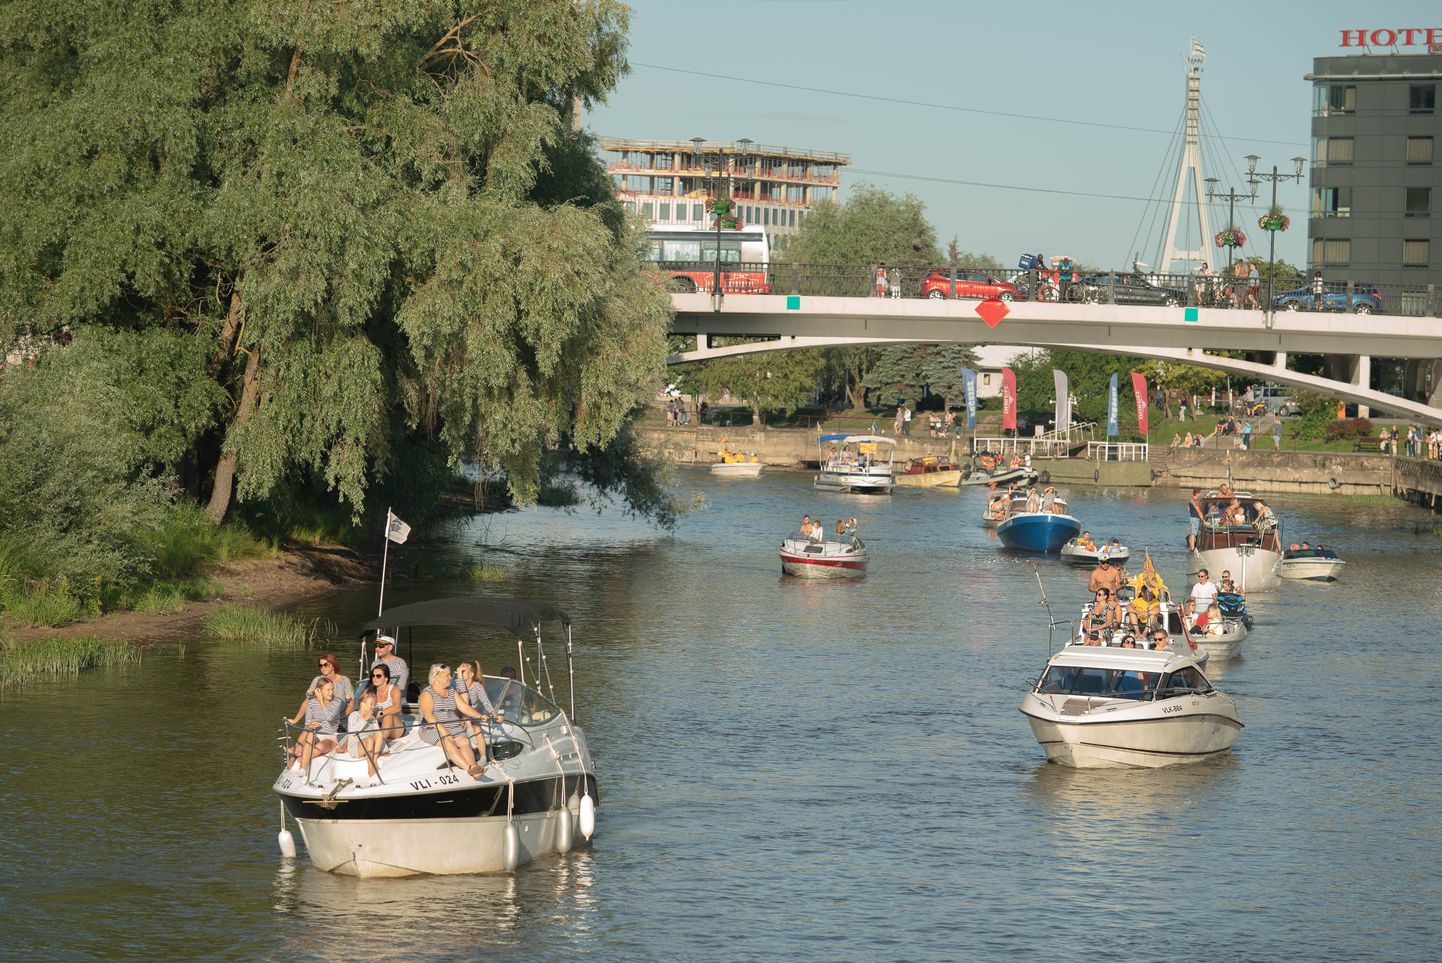 Homme toimub Tartus 17. Emajõe festival. Pildil Emajõe jõeparaad möödunud aastast Kaarsilla ja Võidu silla vahel Hansapäevade raames.